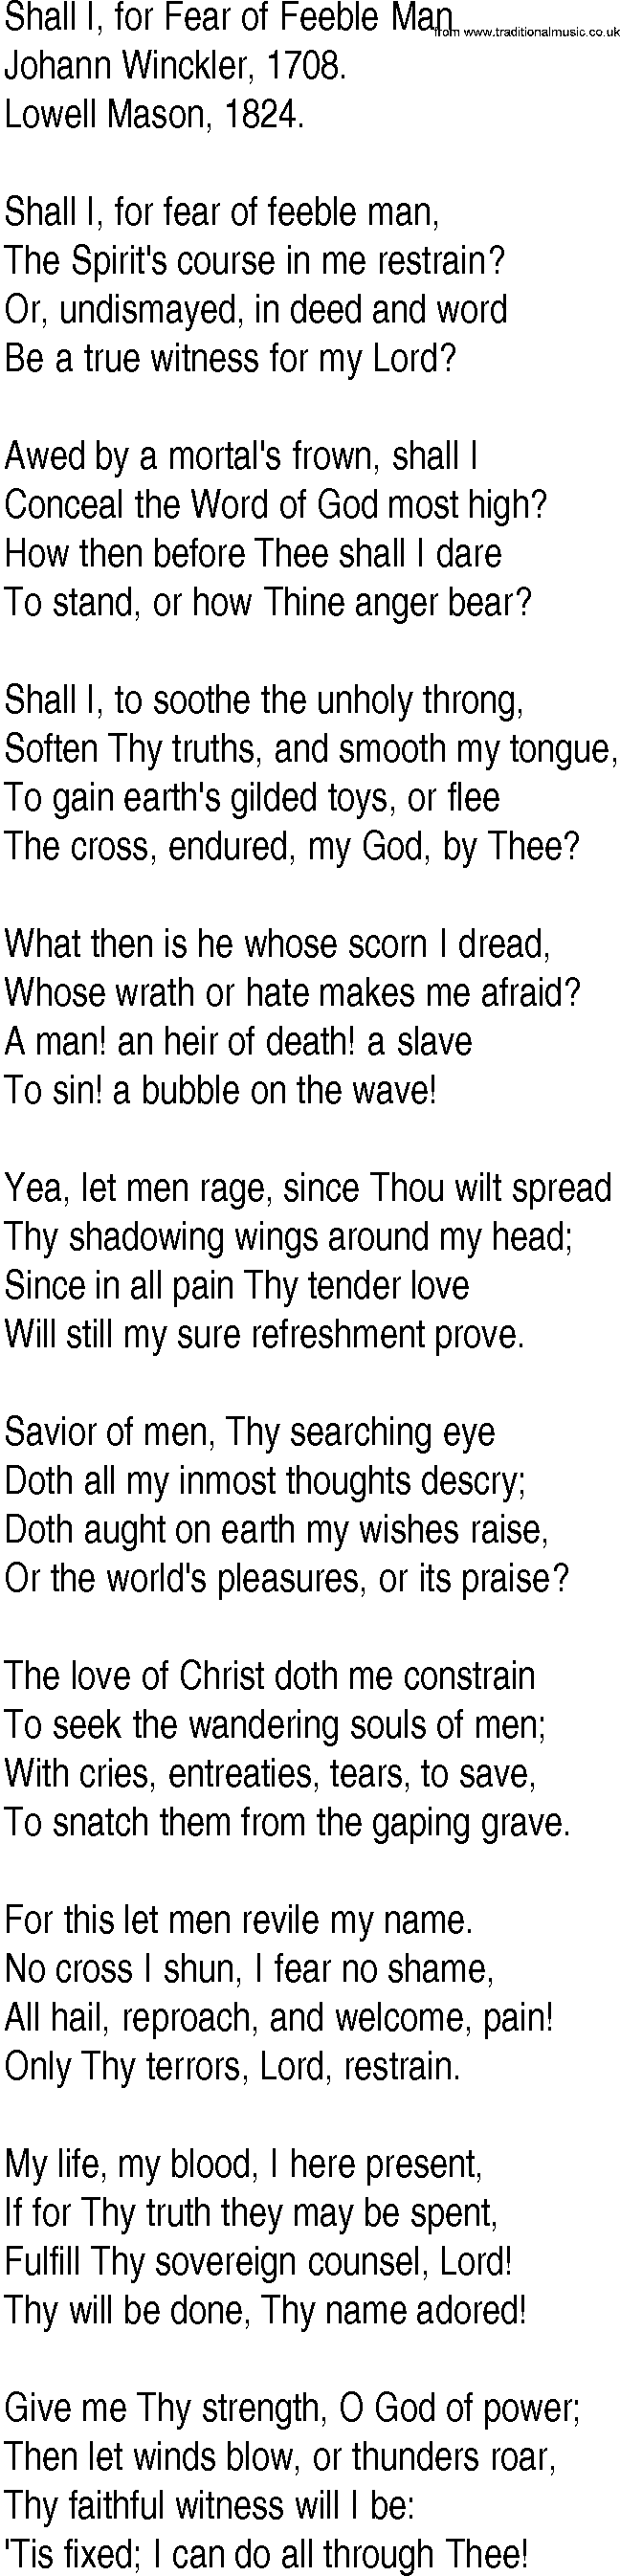 Hymn and Gospel Song: Shall I, for Fear of Feeble Man by Johann Winckler lyrics